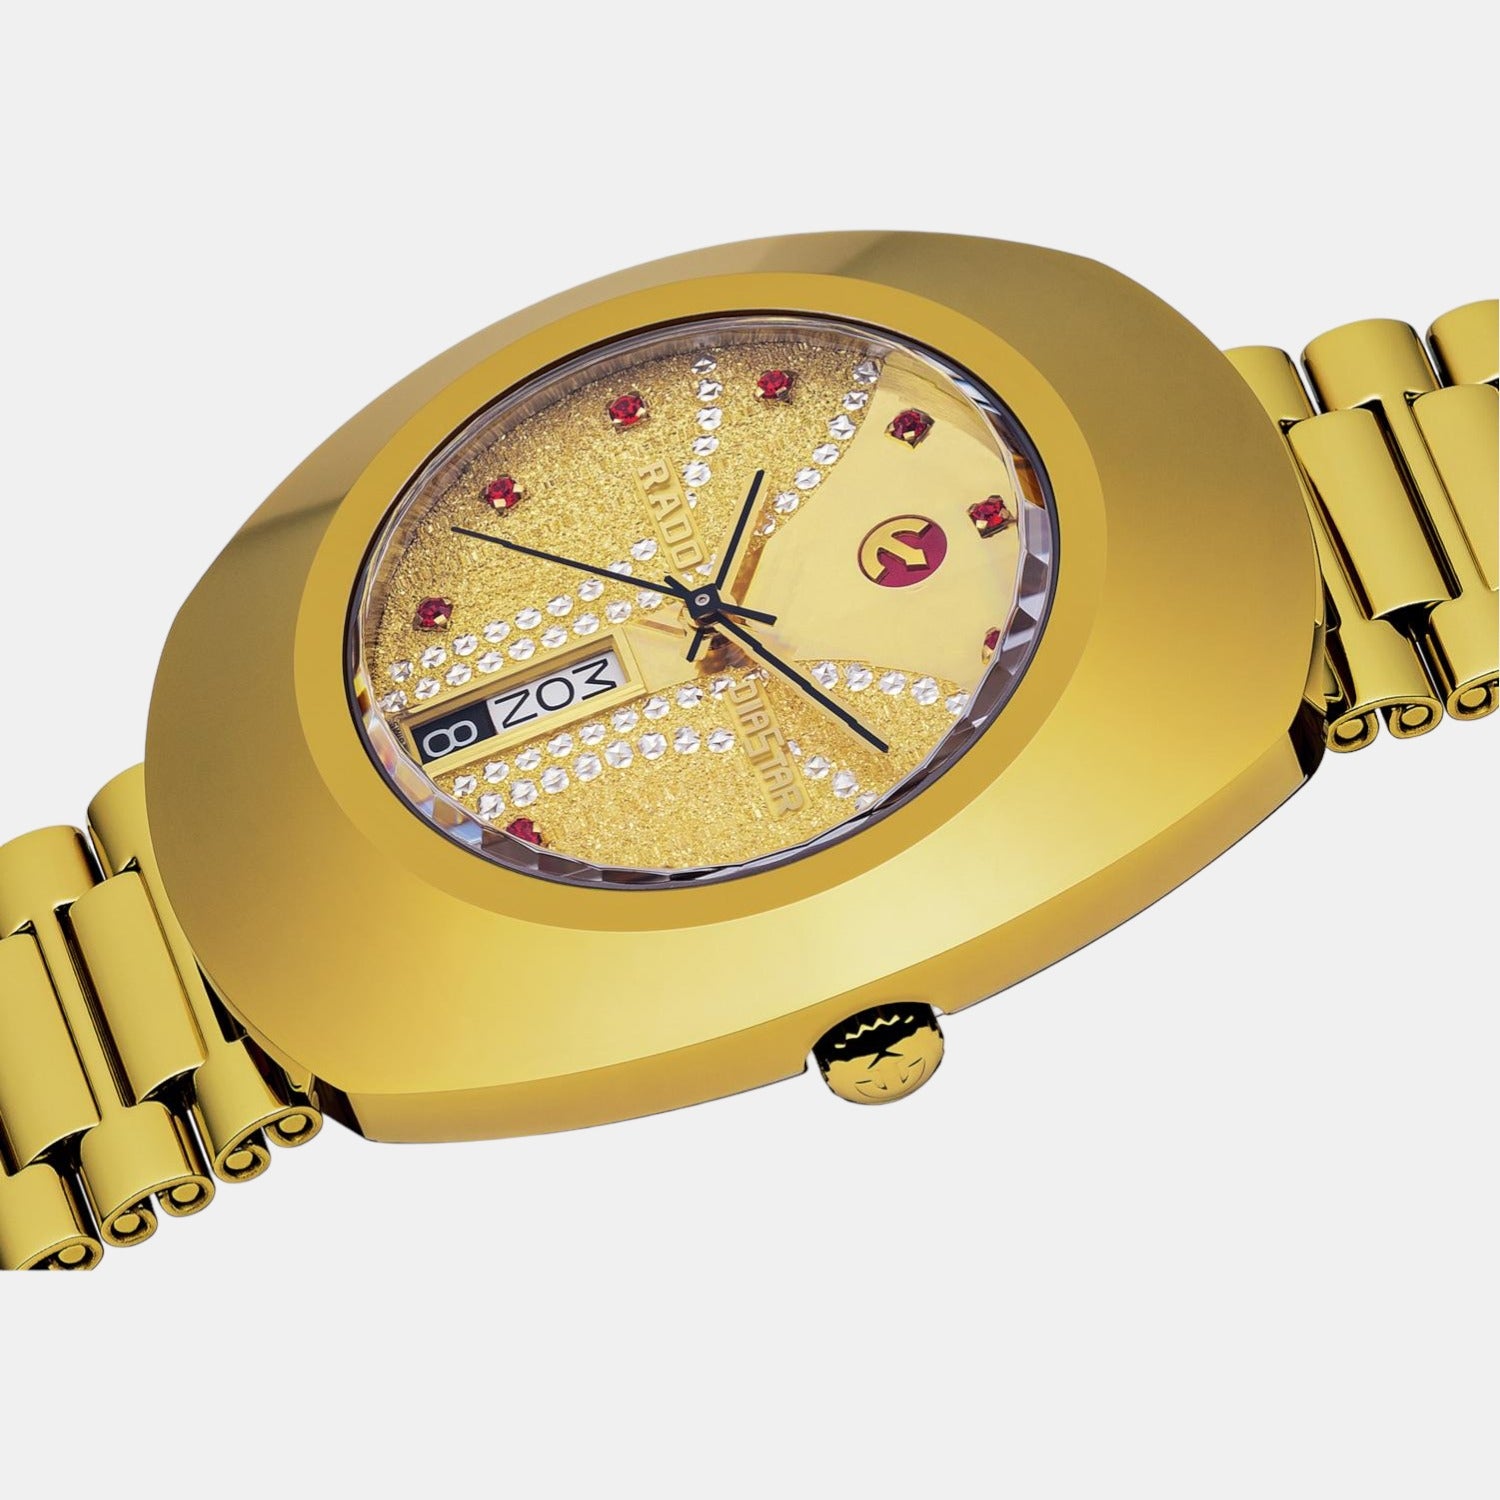 rado-stainless-steel-gold-analog-men-watch-r12413033